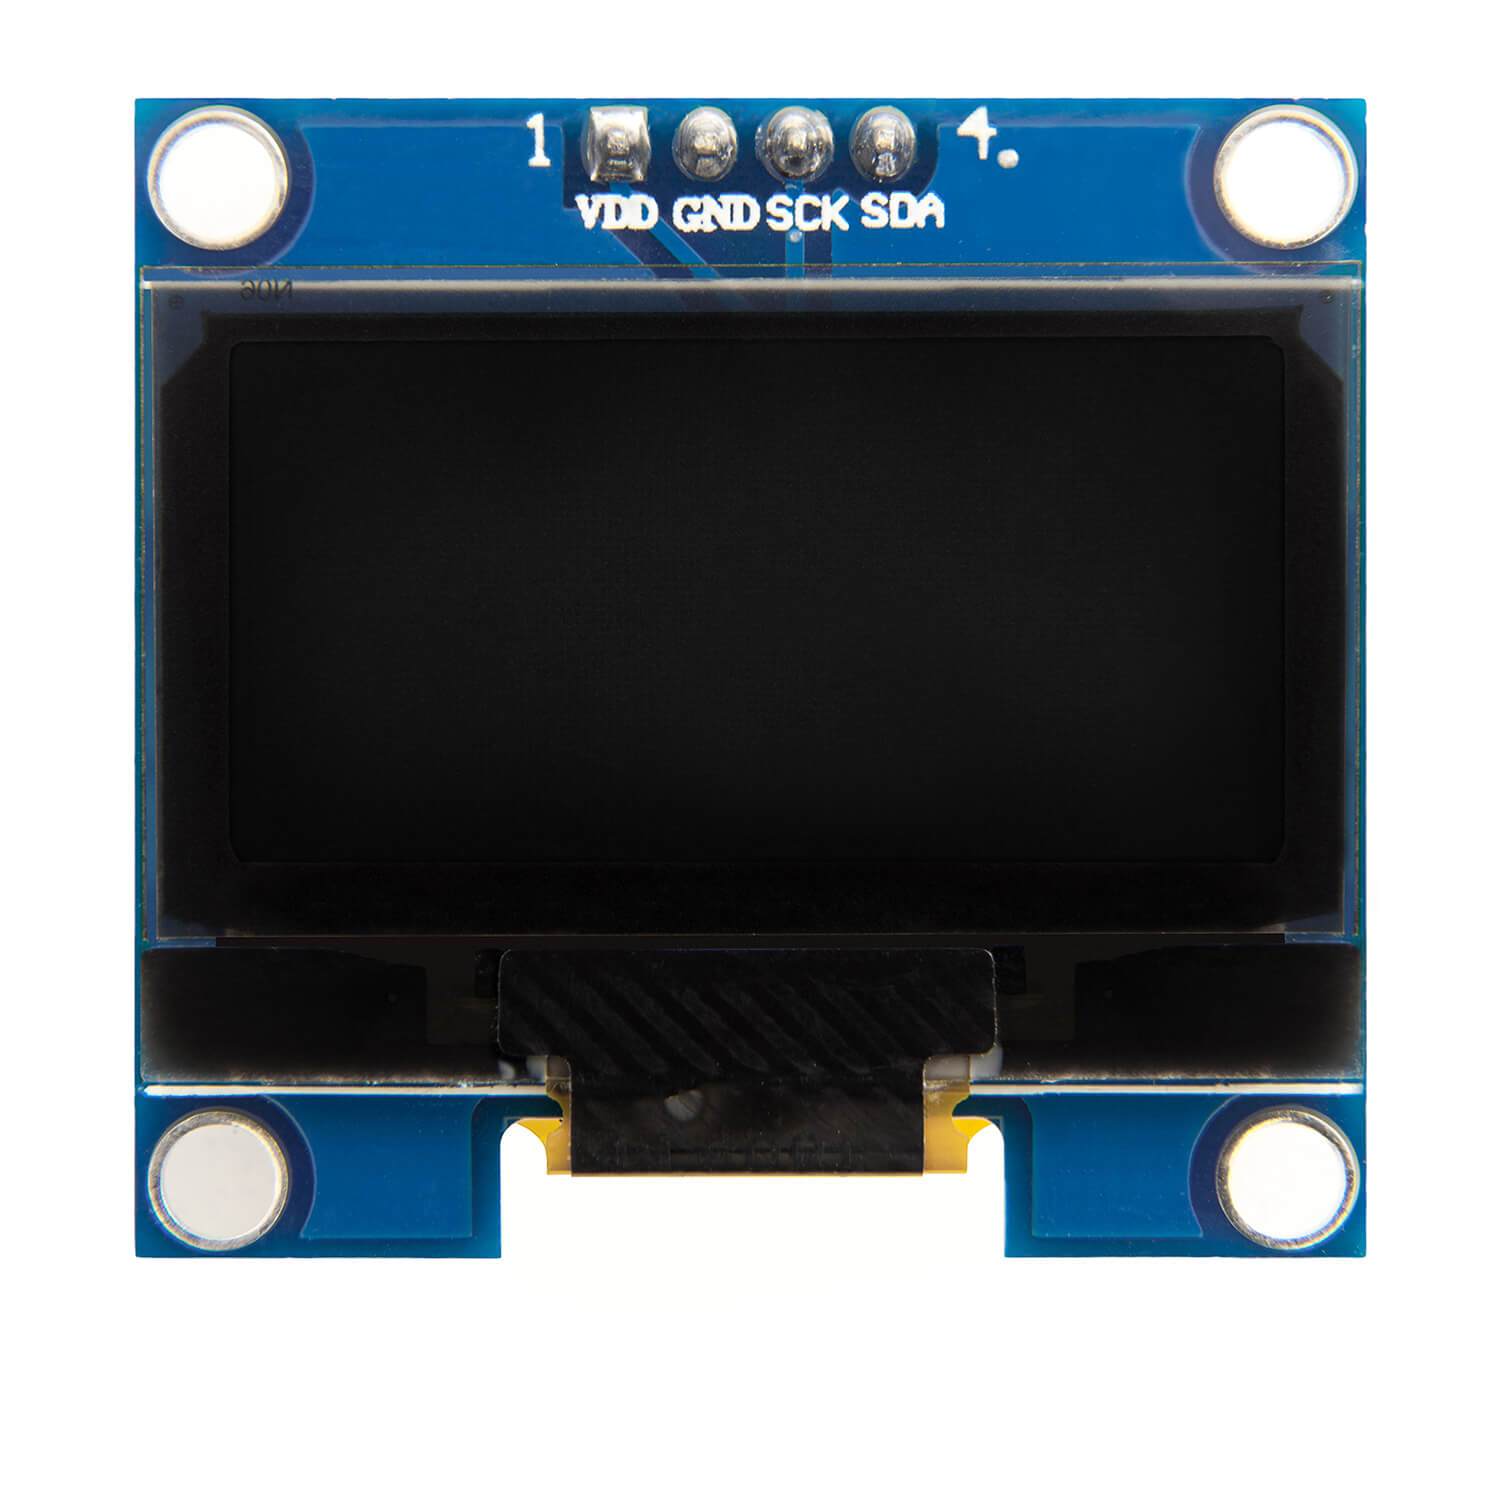 1,3 Zoll OLED I2C 128 x 64 Pixel Display SSD1306 kompatibel mit Arduino und Raspberry Pi